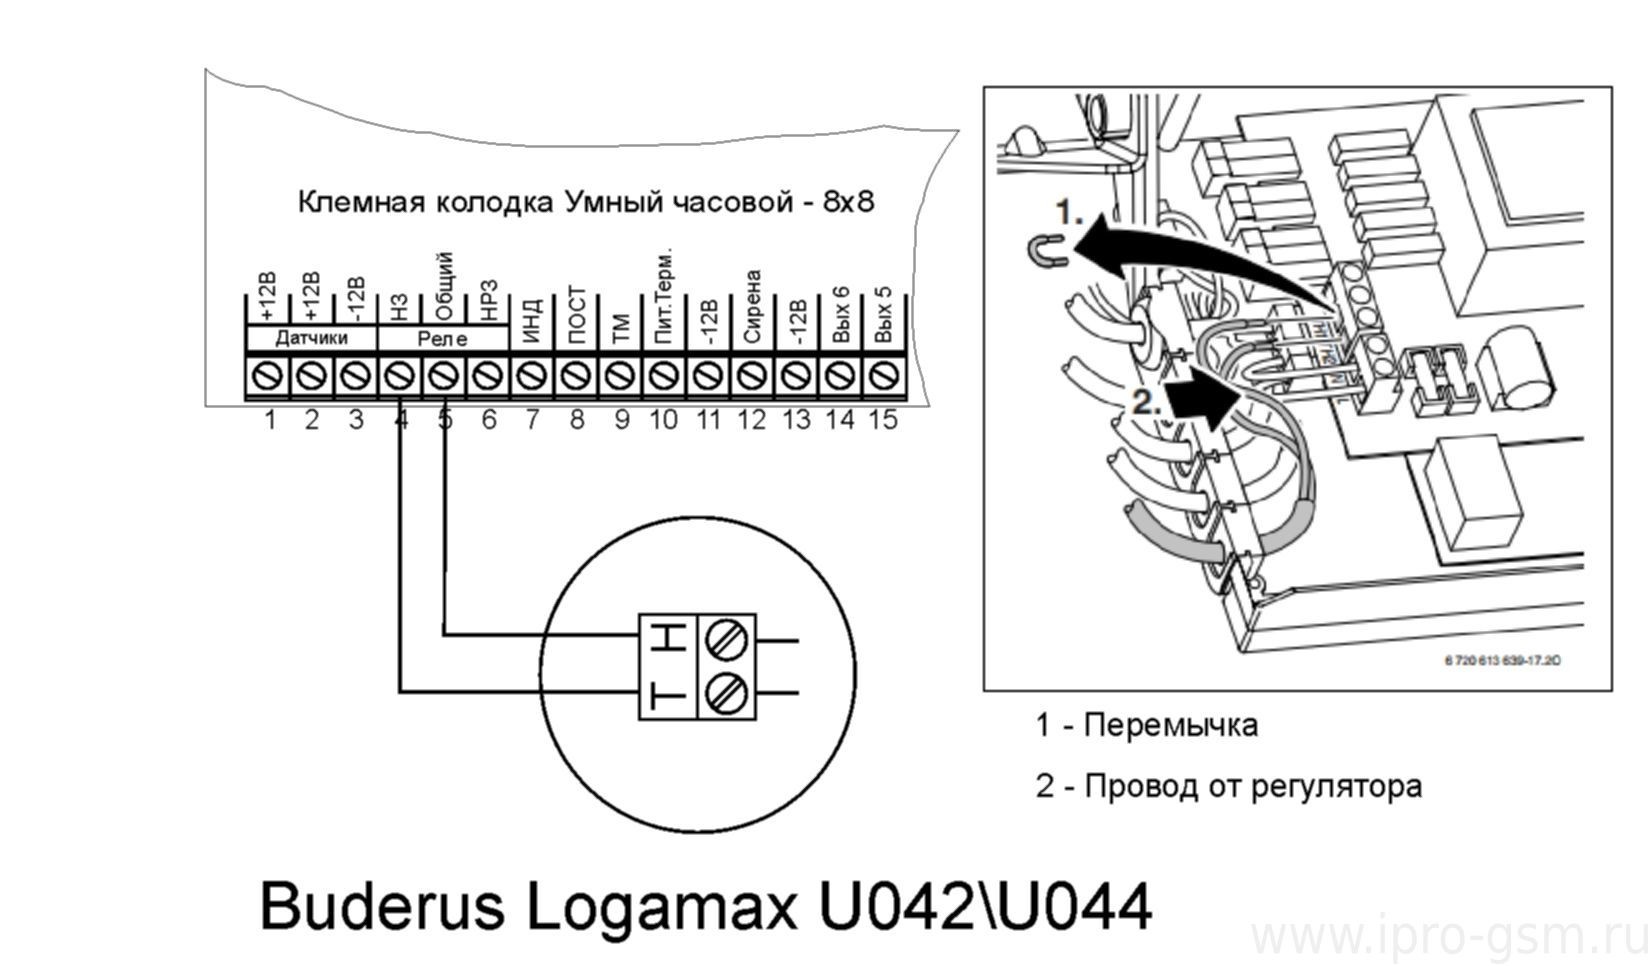 Схема подключения Часовой 8х8 к котлу Buderus Logamax